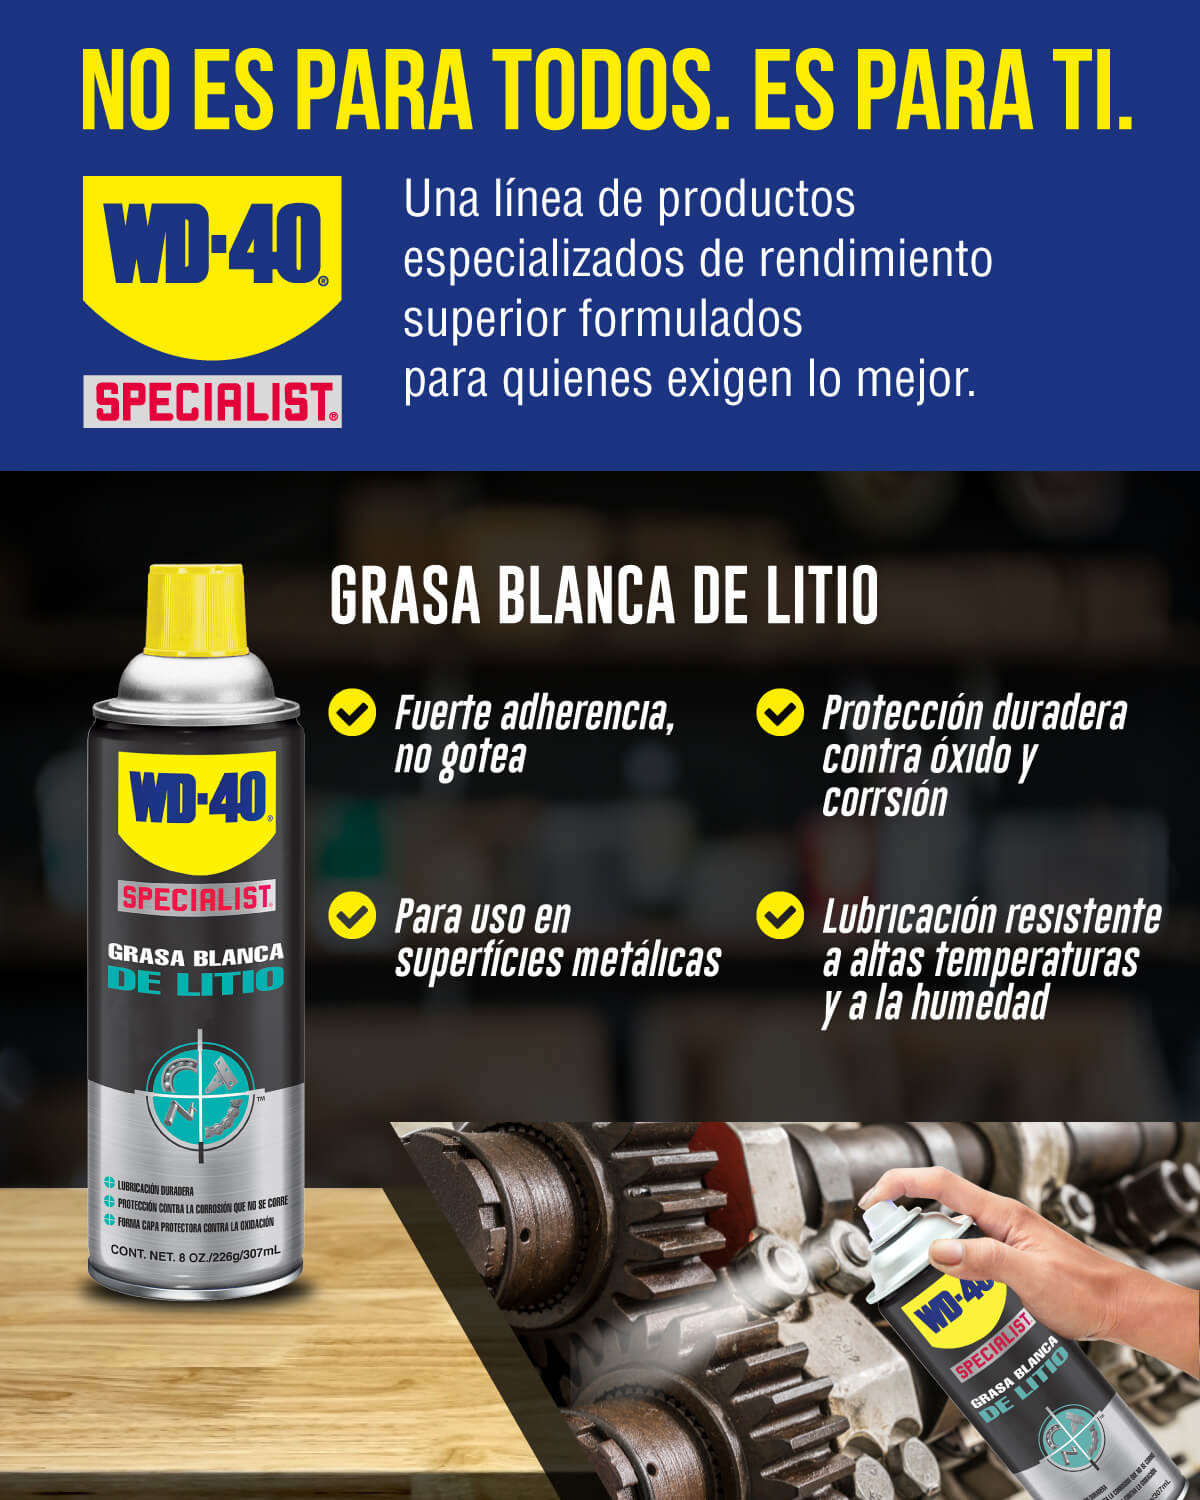 WD40 Specialist Grasa blanca de litio